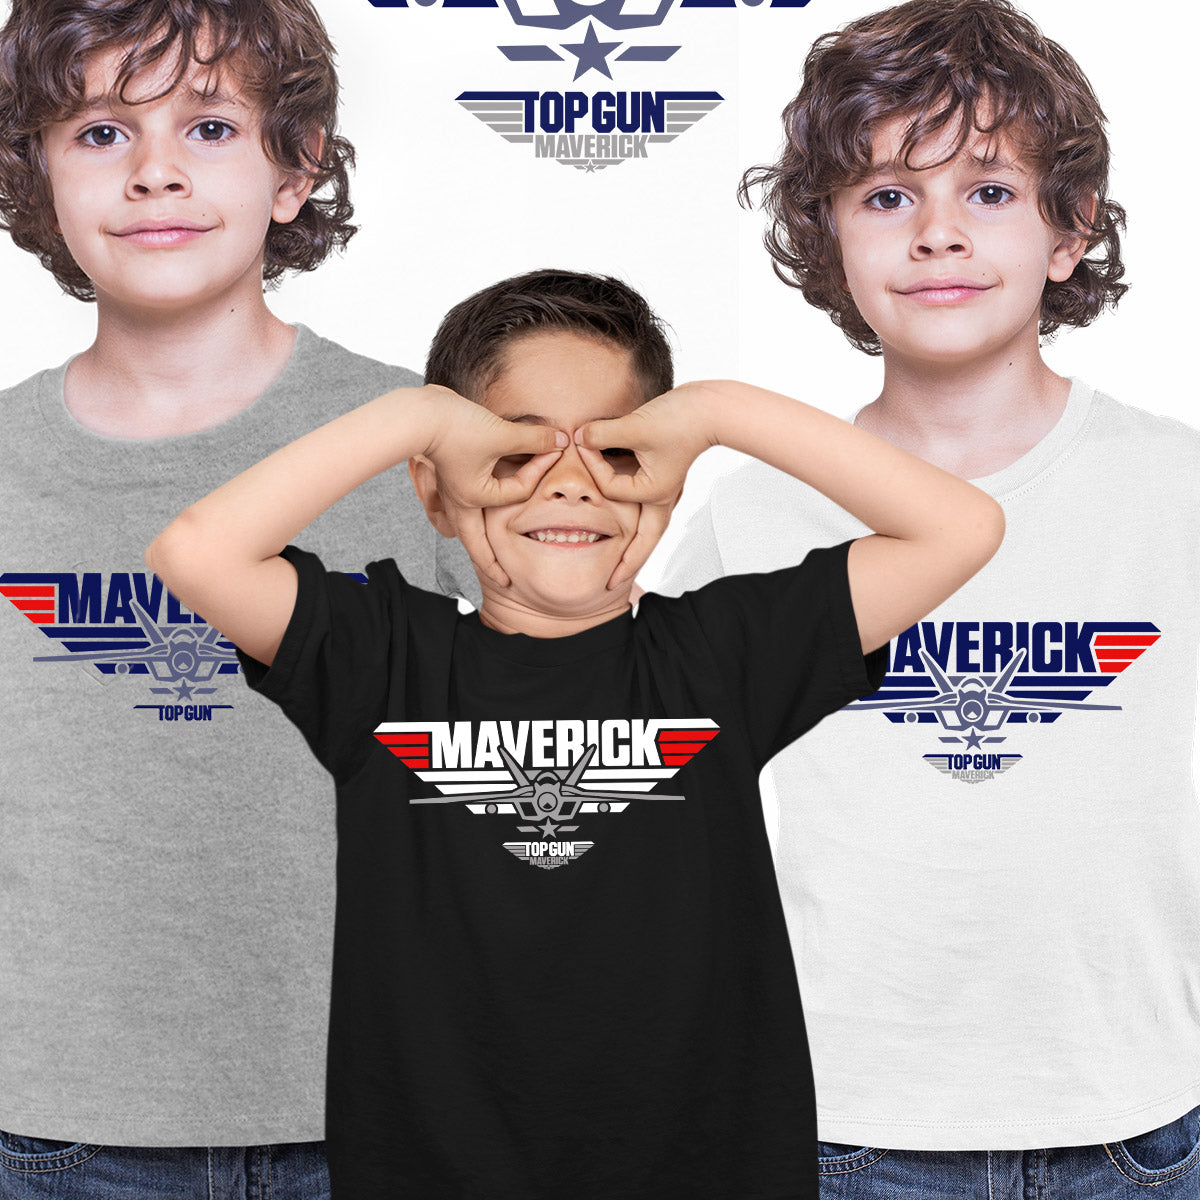 Top Gun Maverick Shirt For Top Gun Fan